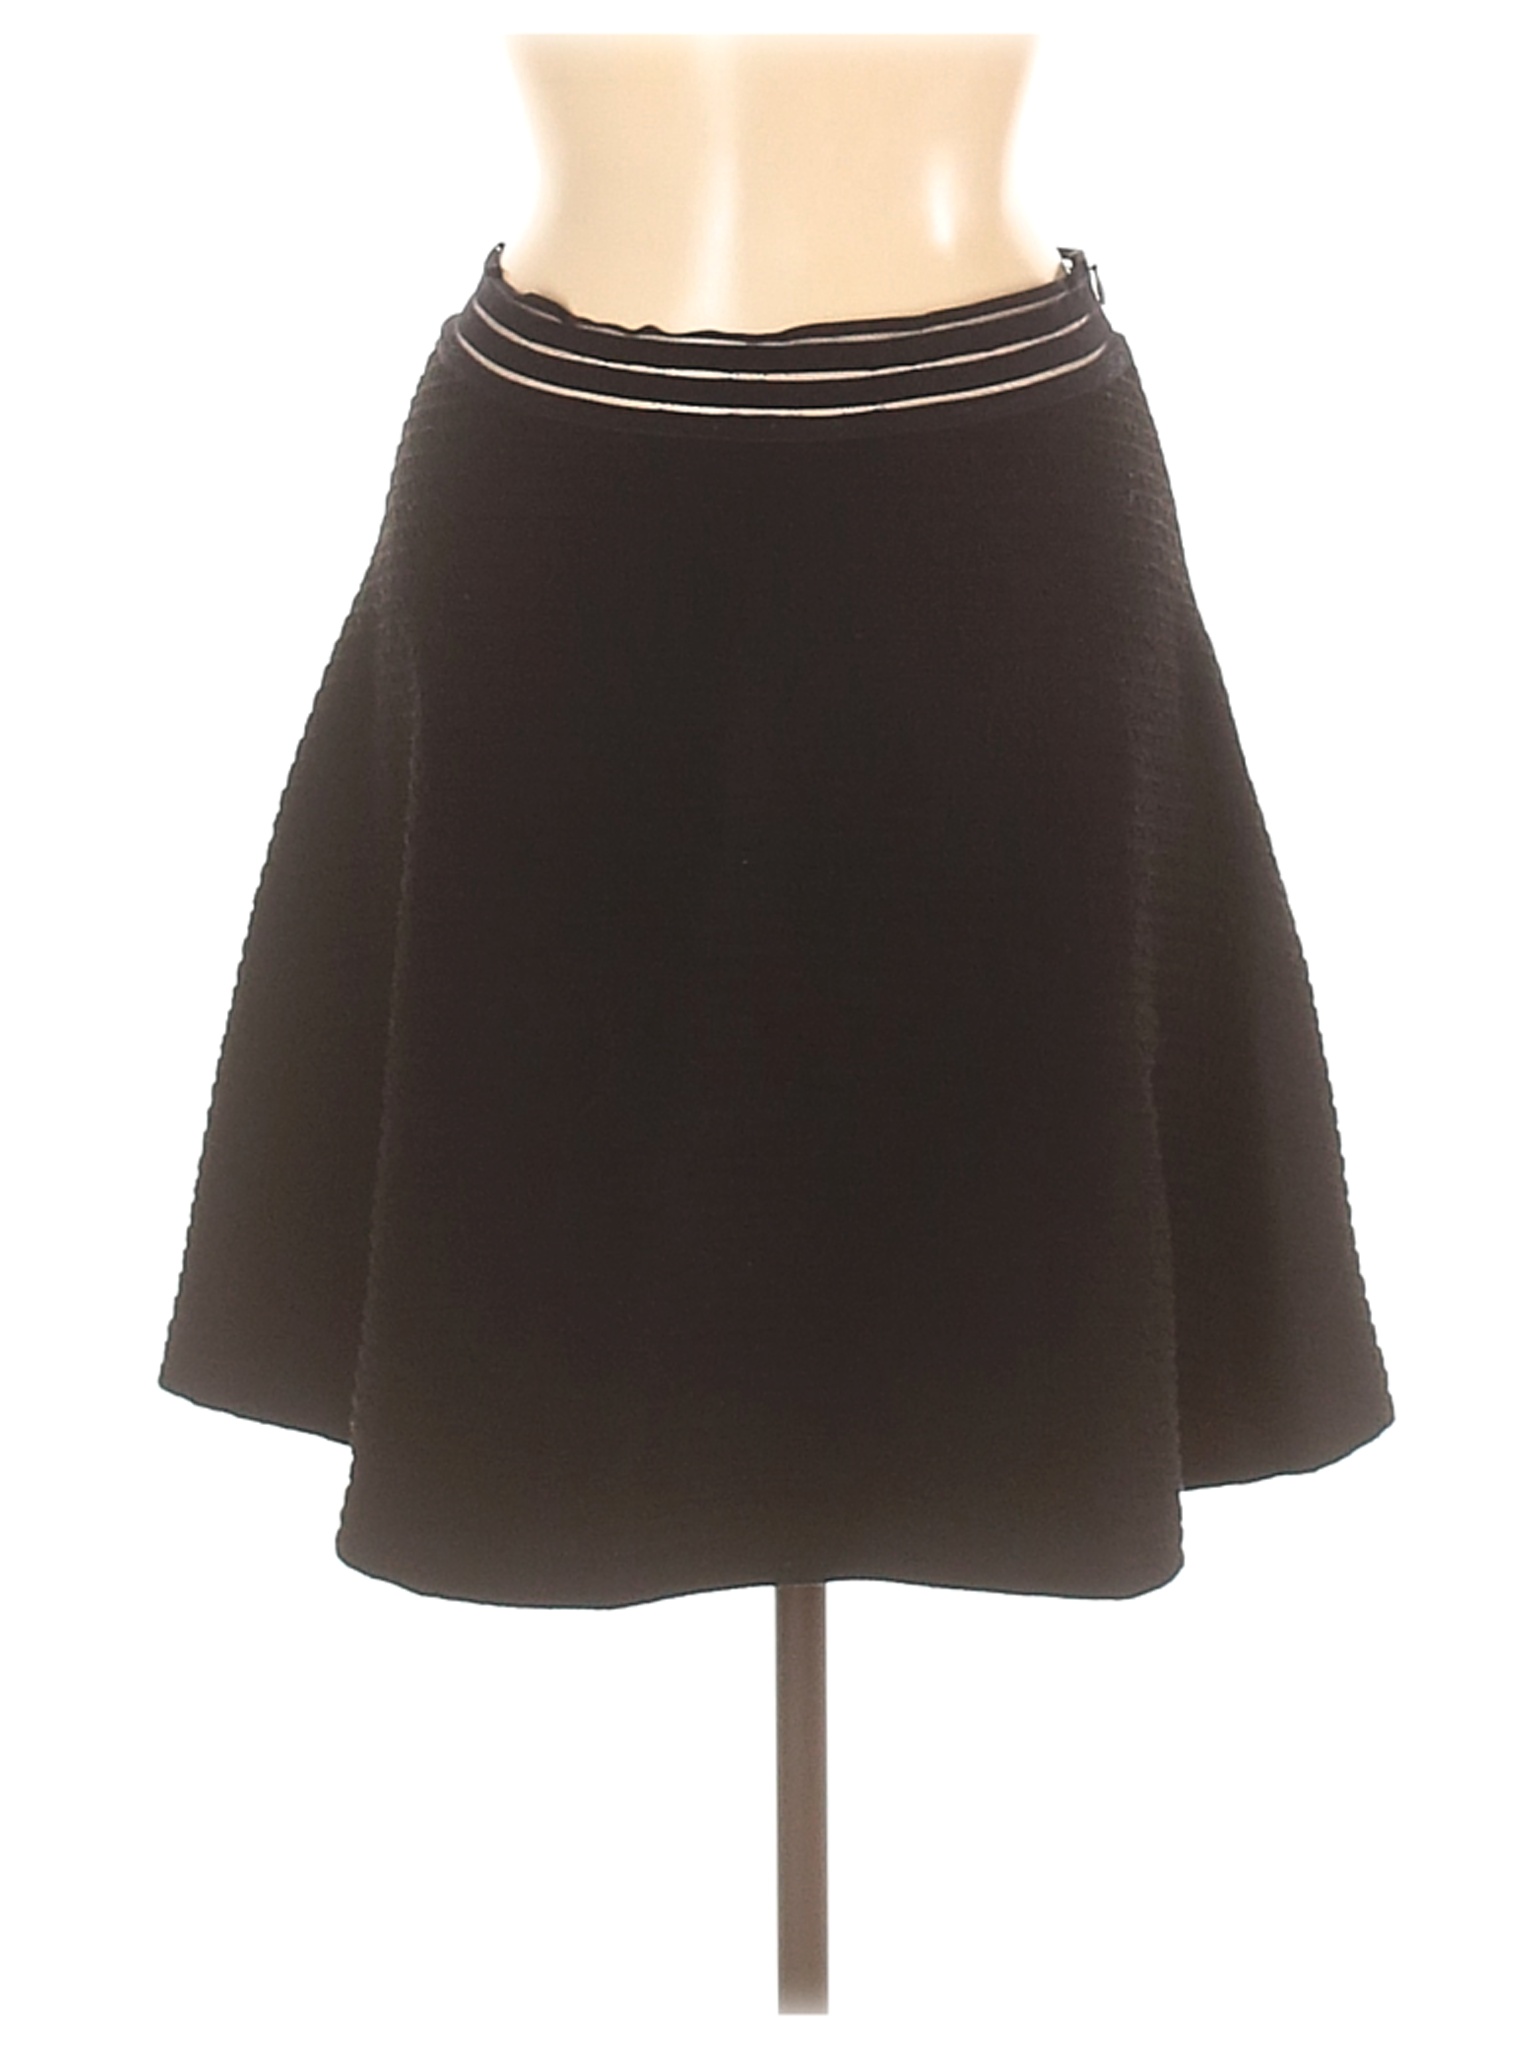 Sandro Women Black Casual Skirt M | eBay